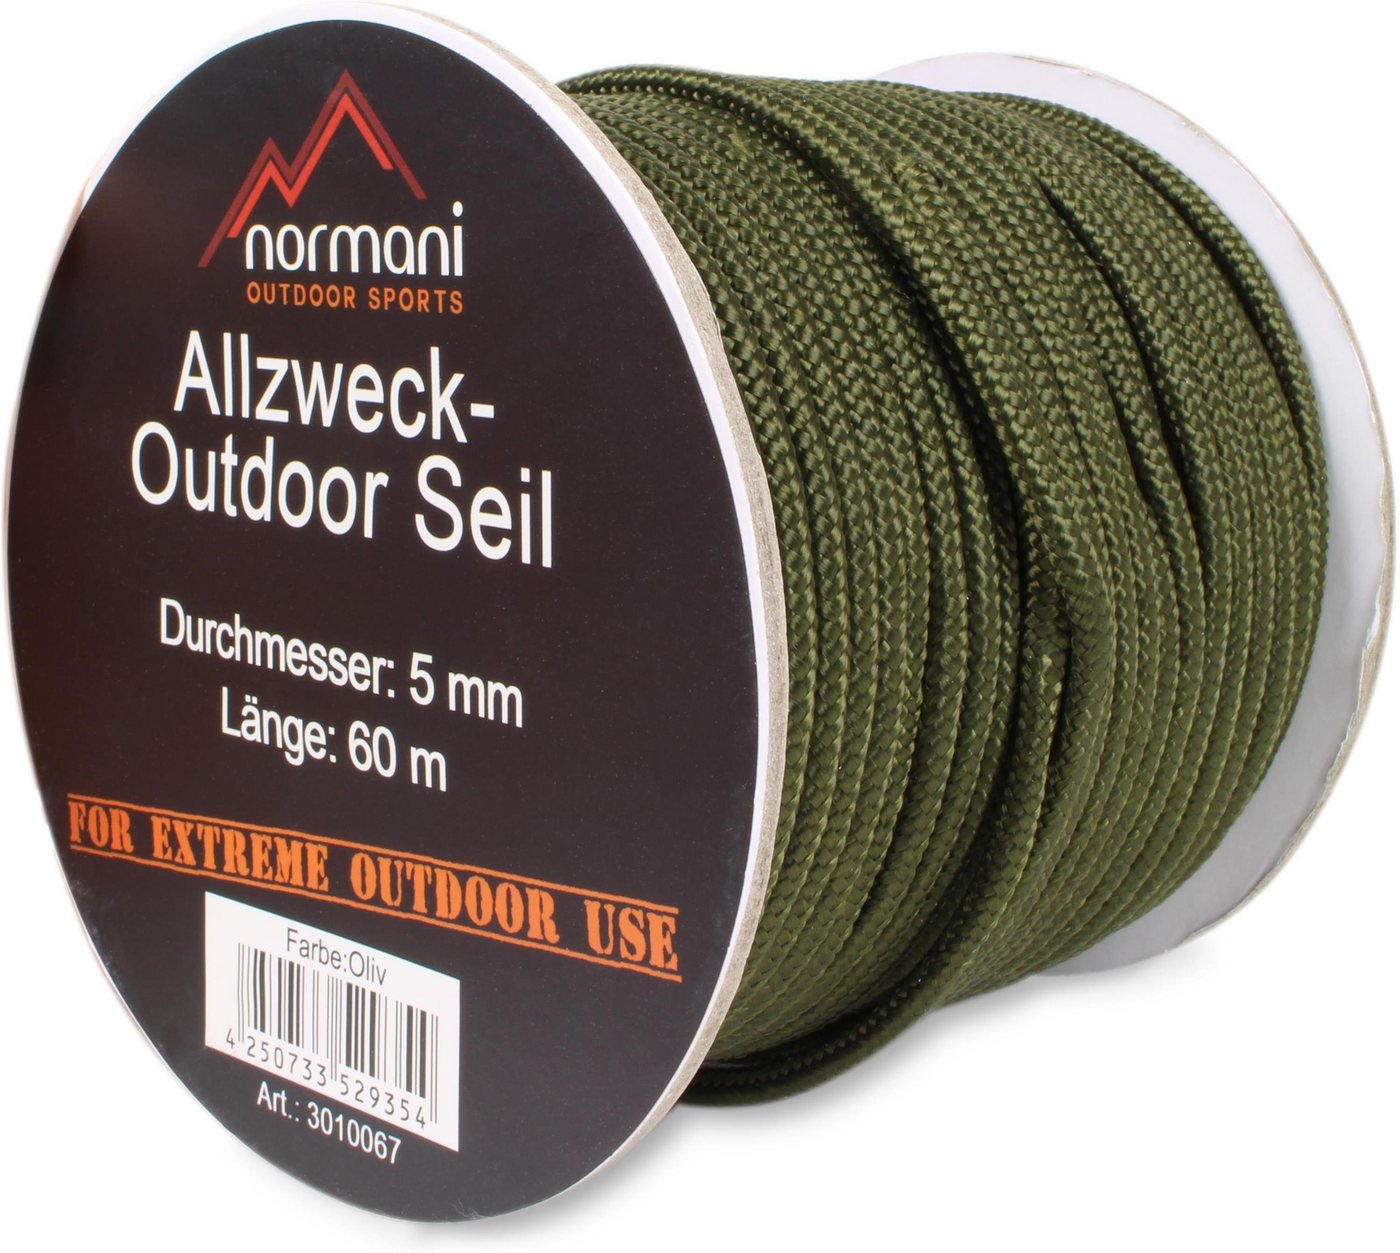 normani Allzweck-Outdoor-Seil 5 mm x 60 m Chetwynd Seil von normani